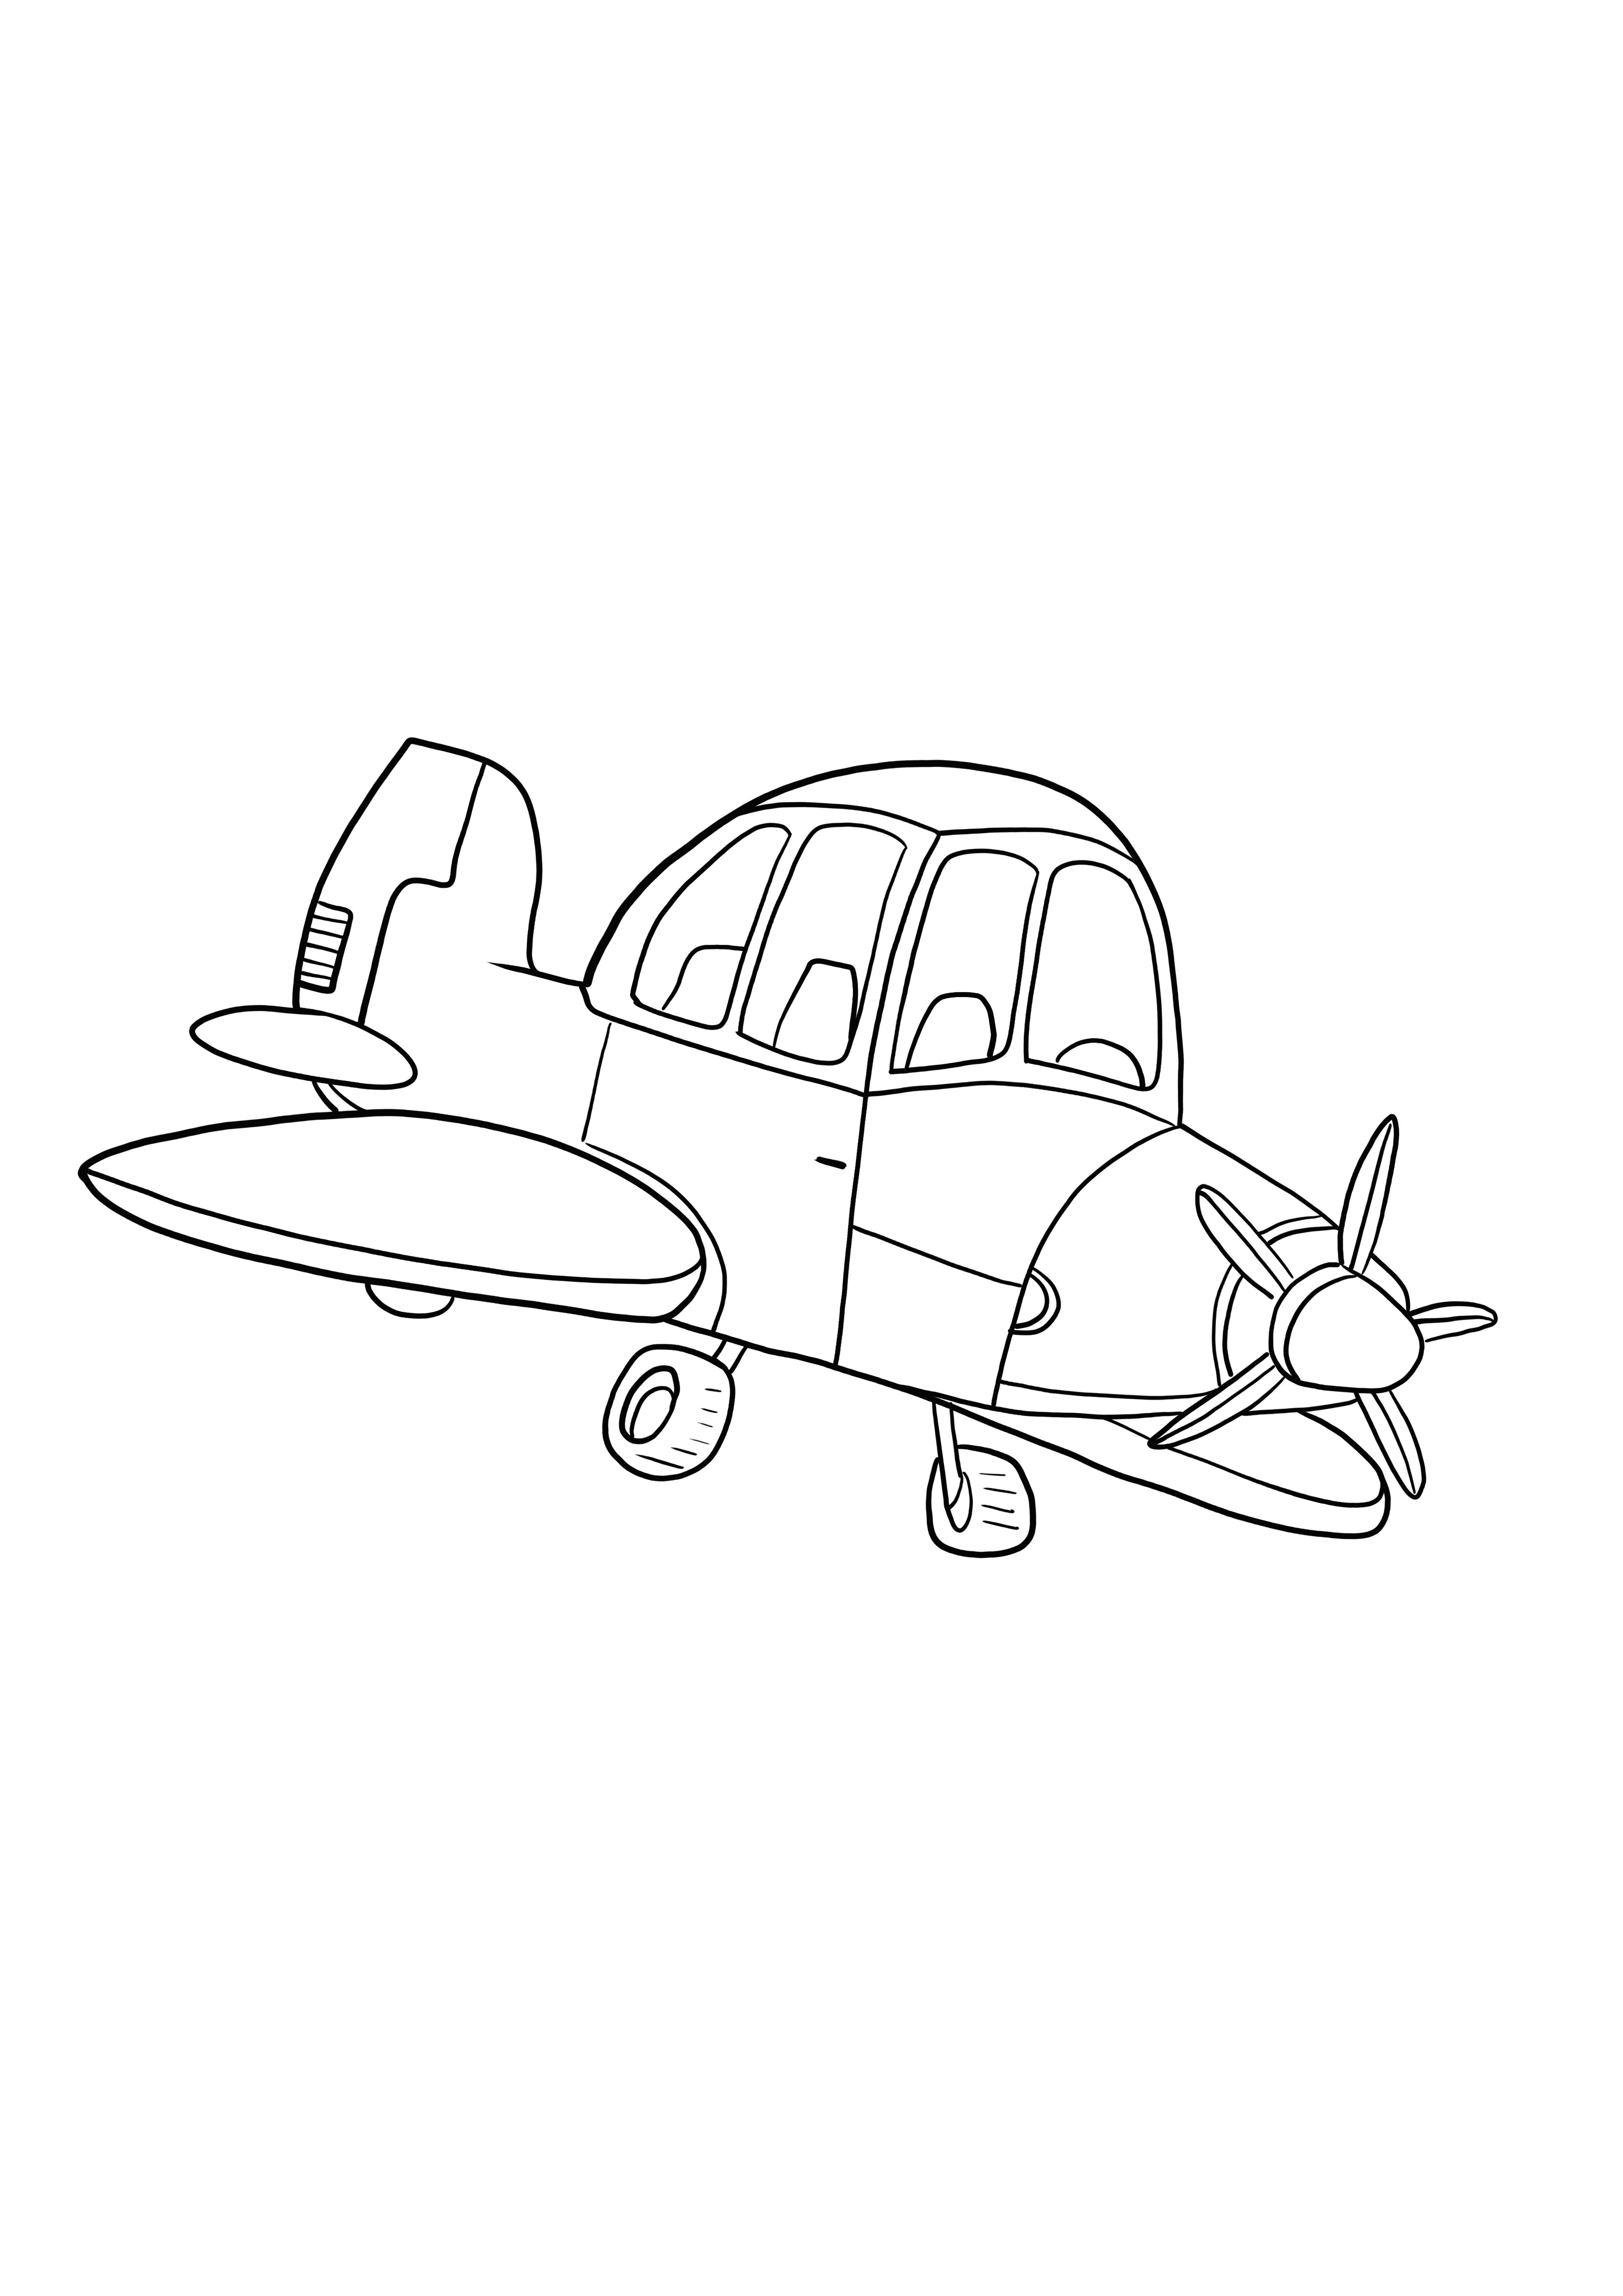 avião pequeno livre para colorir e imprimir